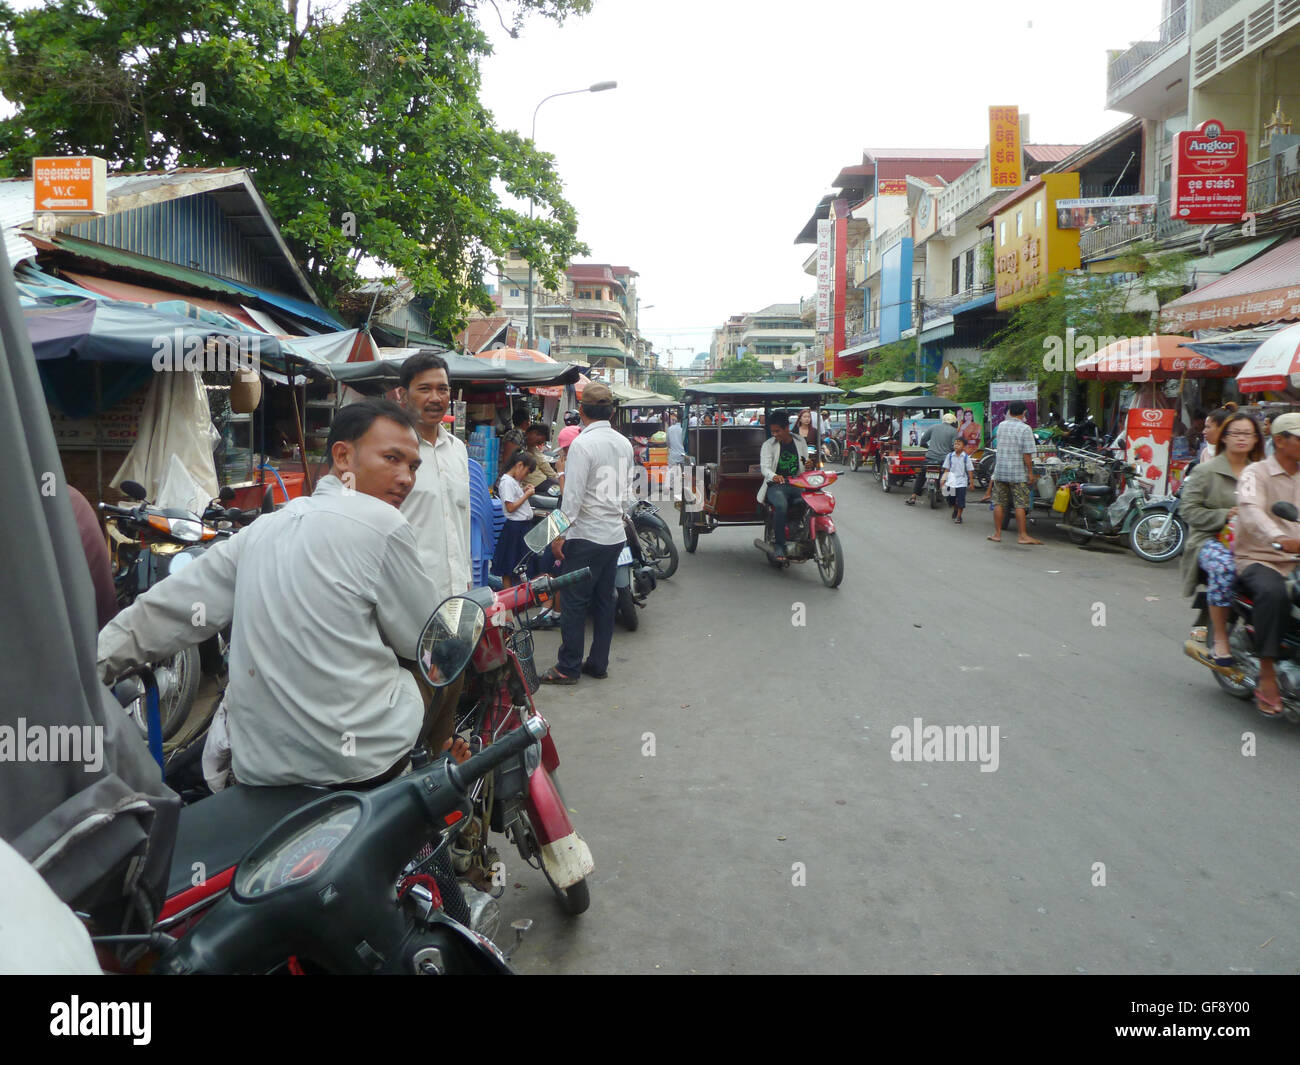 Straßenszene in Phnom Penh mit Menschen auf dem Weg zur Arbeit im Auto und Motorräder. Sehr lebhaften und pulsierenden kambodschanischen Stadt. Stockfoto